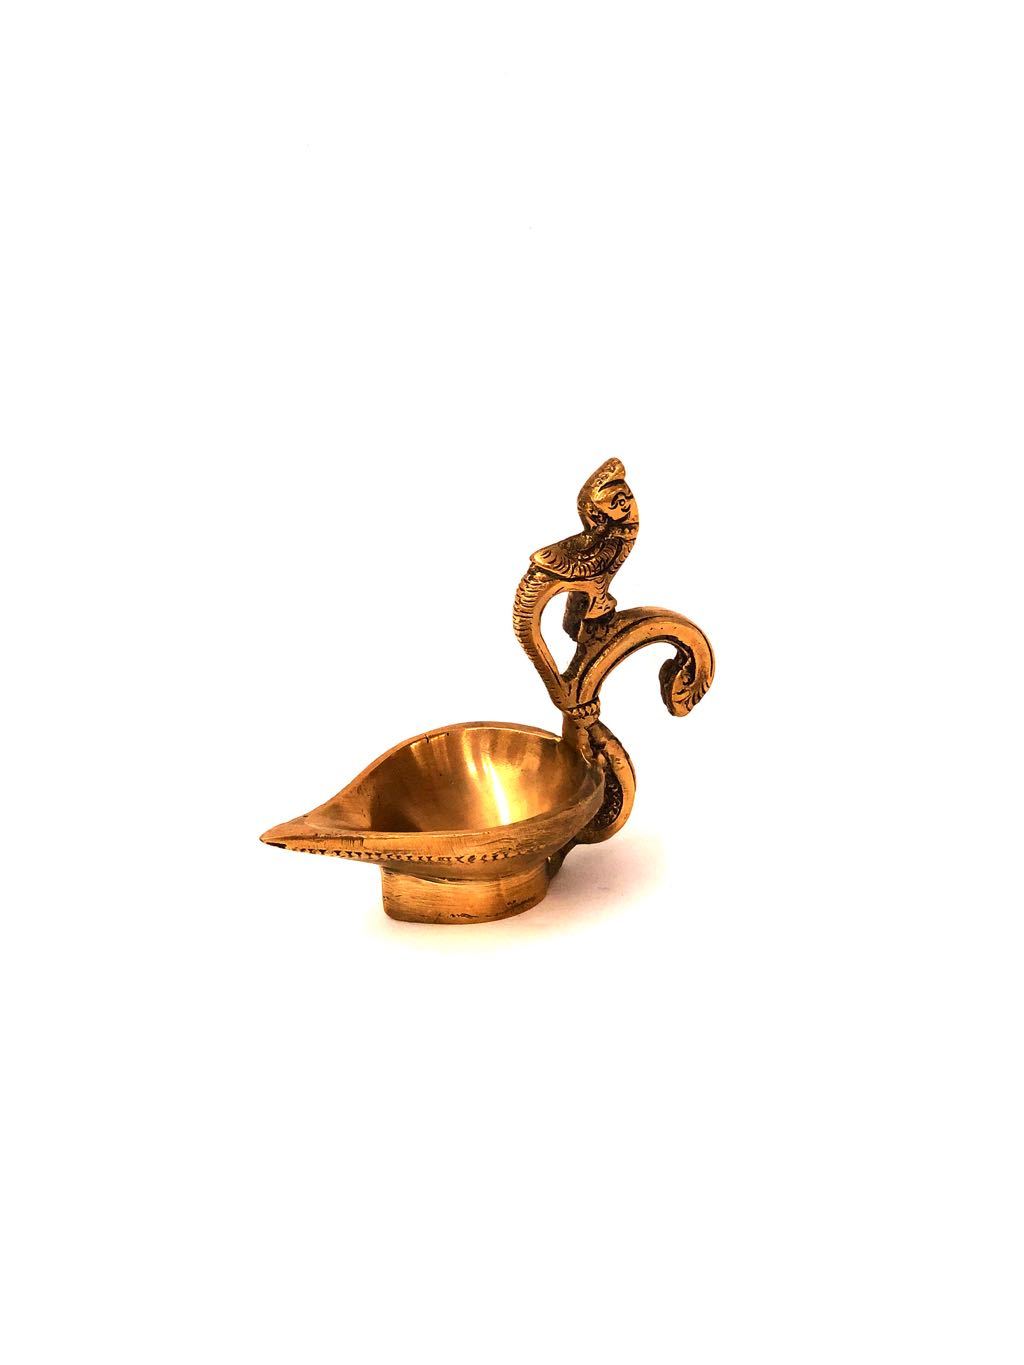 Designer Brass Diya Unique Handicraft For Prayer & Temple Tamrapatra - Tamrapatra